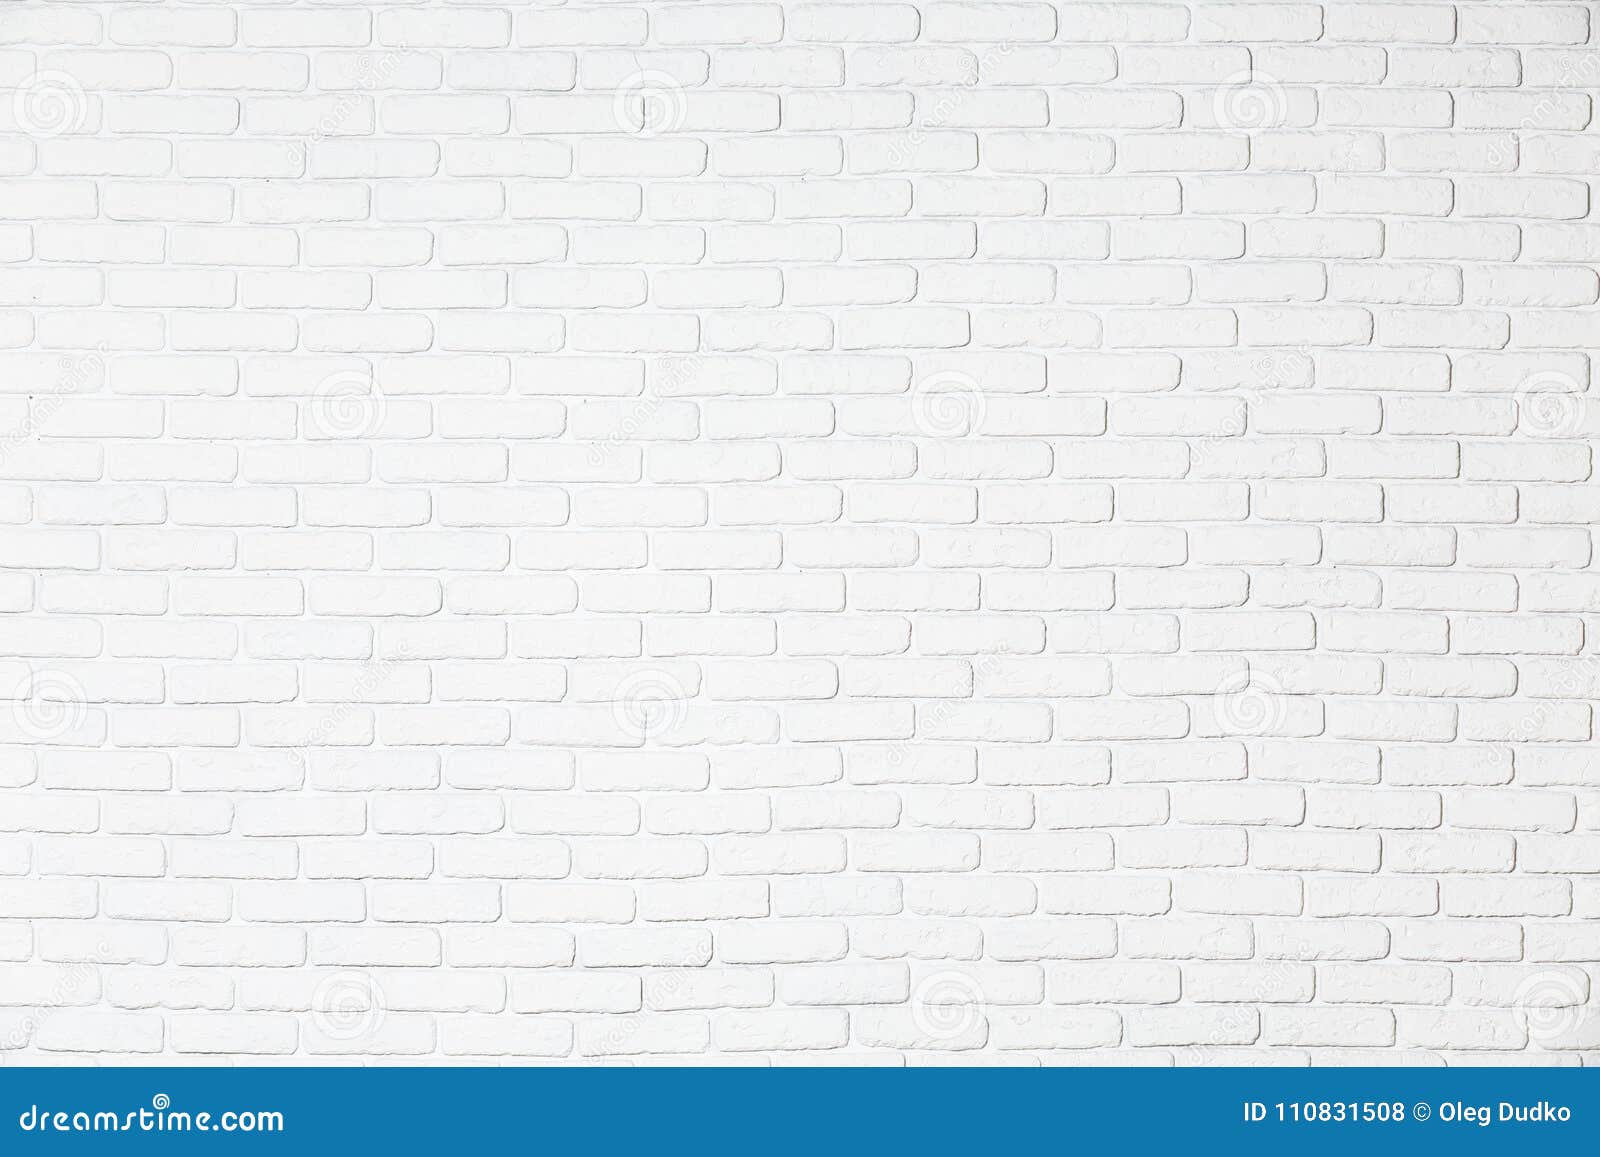 Ảnh phông nền gạch tường trắng sẽ gợi lên sự tinh tế và trang nhã cho mỗi bức ảnh. Hãy truy cập để tìm kiếm những hình ảnh phông nền gạch tường trắng độc đáo và đẹp mắt để tăng thêm sự chuyên nghiệp cho sản phẩm của bạn.